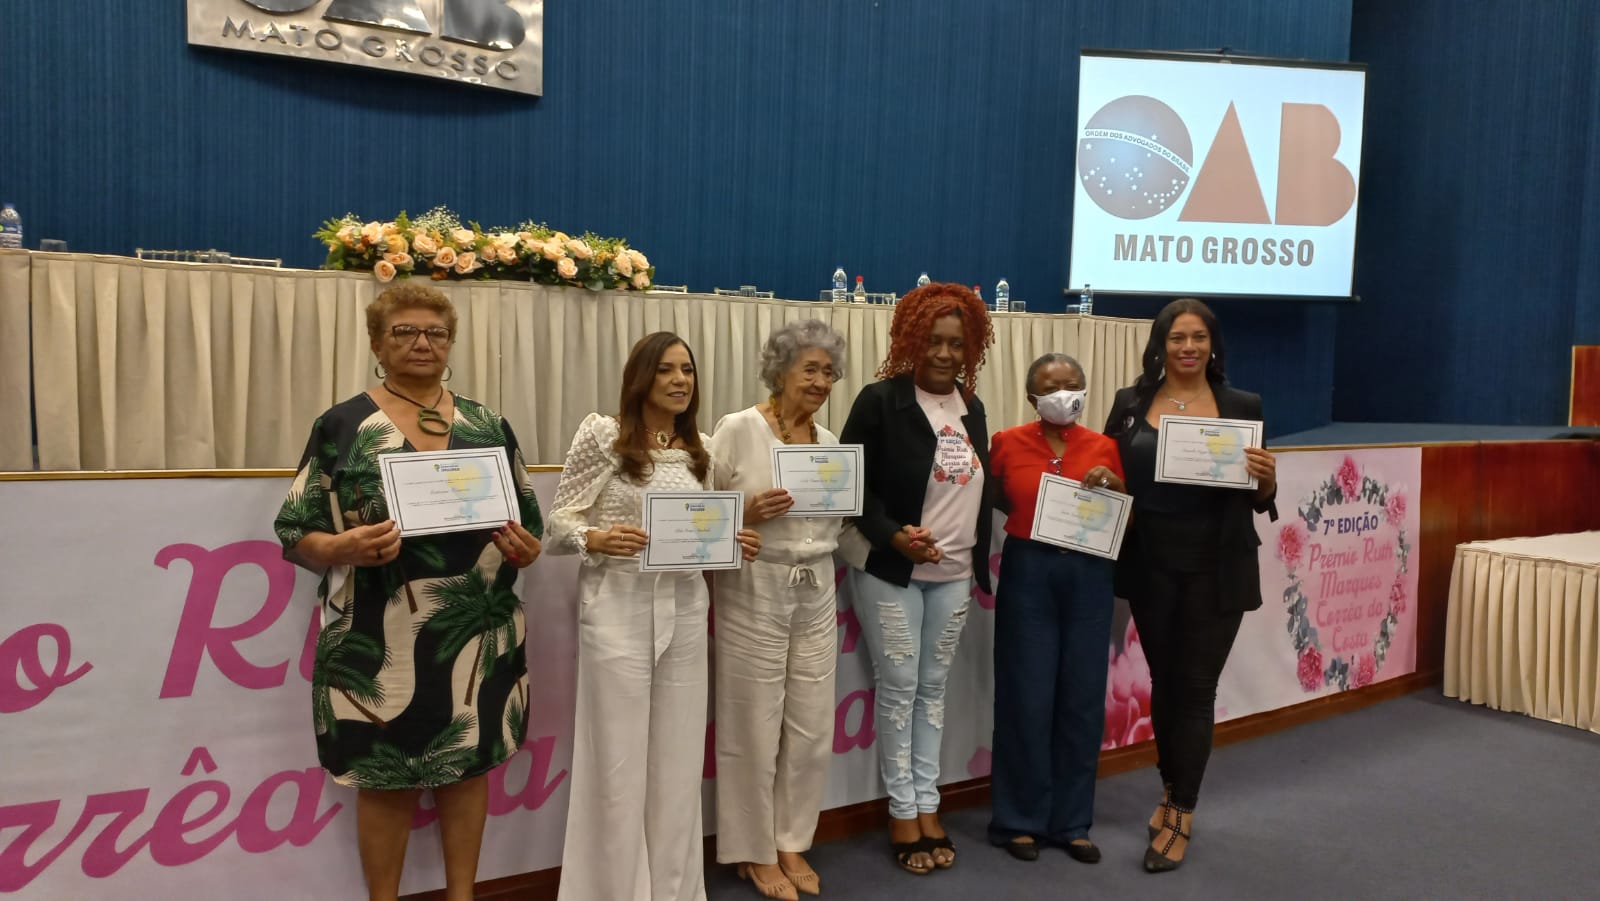 As agraciadas com o diploma de participação ao lado da presidente do CEDM, Ana Carolina, e a premiada da categoria em vida, Daniella Veyga